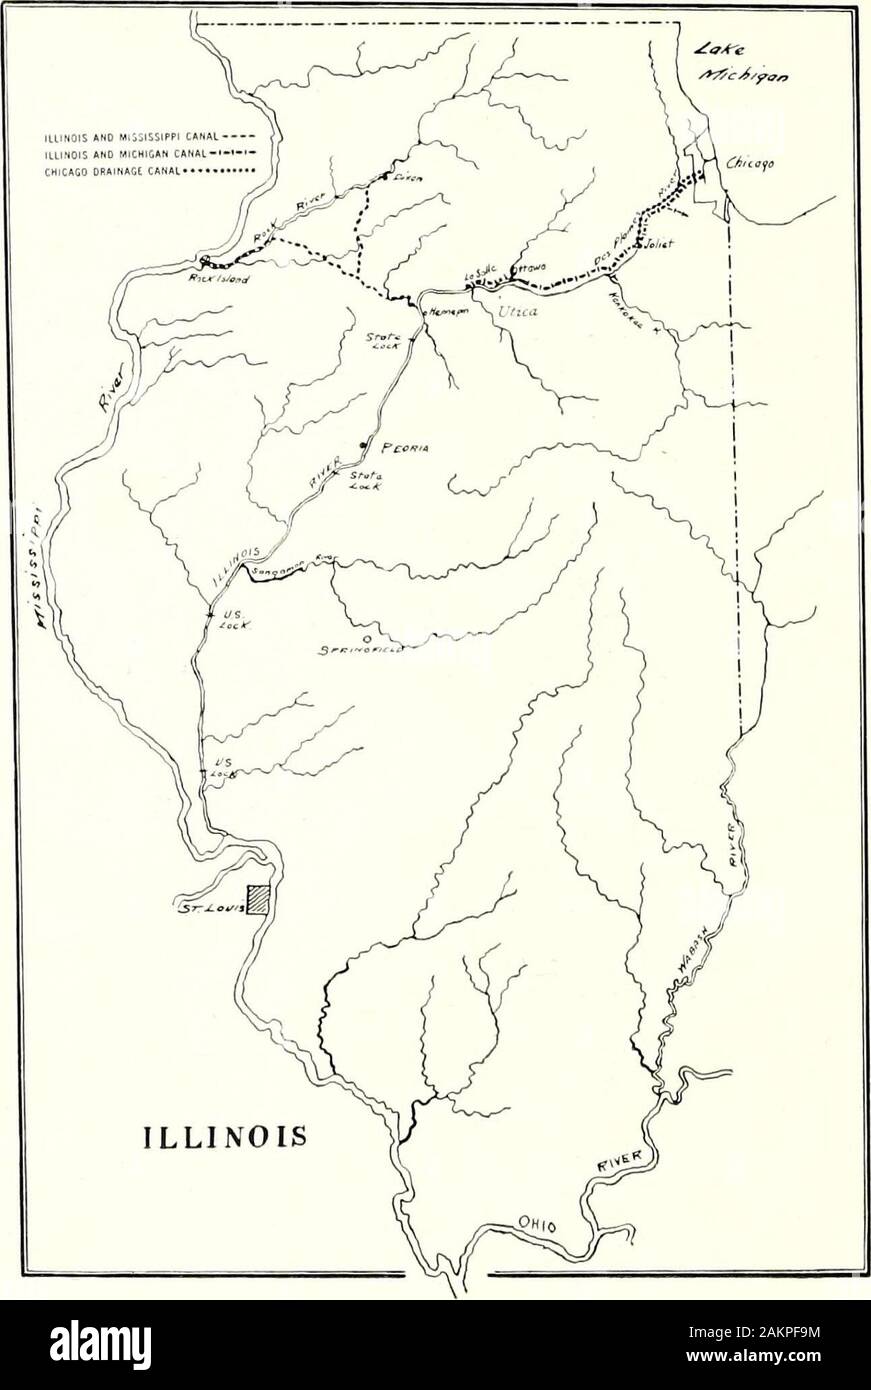 L'Illinois e Michigan Canal : uno studio in storia economica . 35, 37, 45- .dei prezzi del grano, 23; ricevuto a San Louis, 102; spedito, 84, 101 e segg., (1842-47) 99, (1866-67) 112, (1905) 85, 114.Whiteside, gen., 47.larghezza di canale. Vedere il capitolo Dimensioni.Wild cat valuta, 64, 72.Wilson, Gen. James H., 137; piano per allargare il canal, 135 et seq.navigazione invernale di I. & M., 22.tariffe invernali. Vedere i tassi di nolo, inverno.fiume Wisconsin, 154.Wisner, Geo. Y., stima del miglioramento del canale, 140.Woodward, A. B., favorisce la via navigabile da San Lorenzo al Golfo del Messico, 6.Lana spedito, 1842-47, 99.Wright, Beniamino, Foto Stock